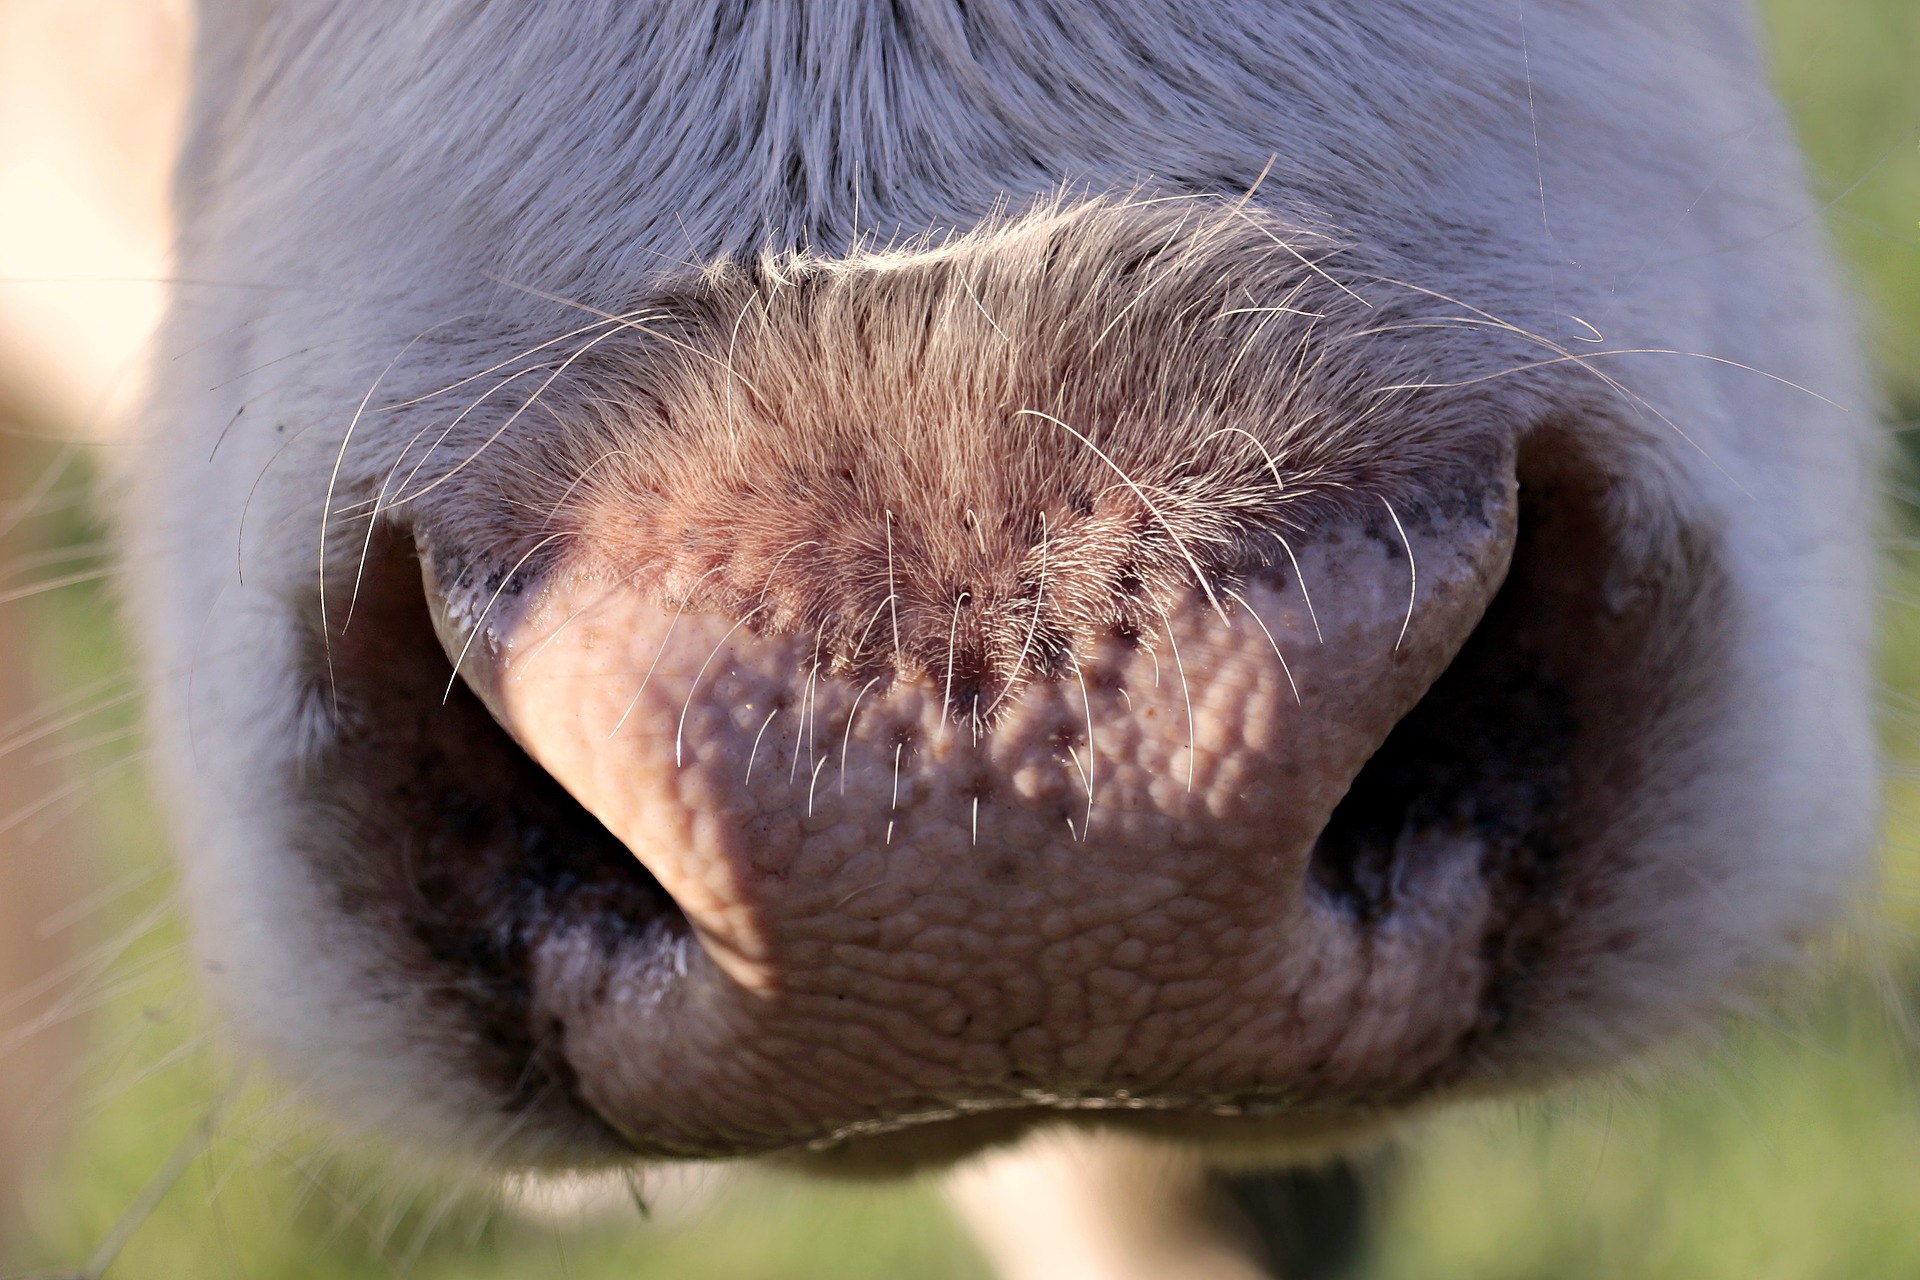 Nourrir le bétail est devient complexe en période de sécheresse. Image par S. Hermann & F. Richter de Pixabay